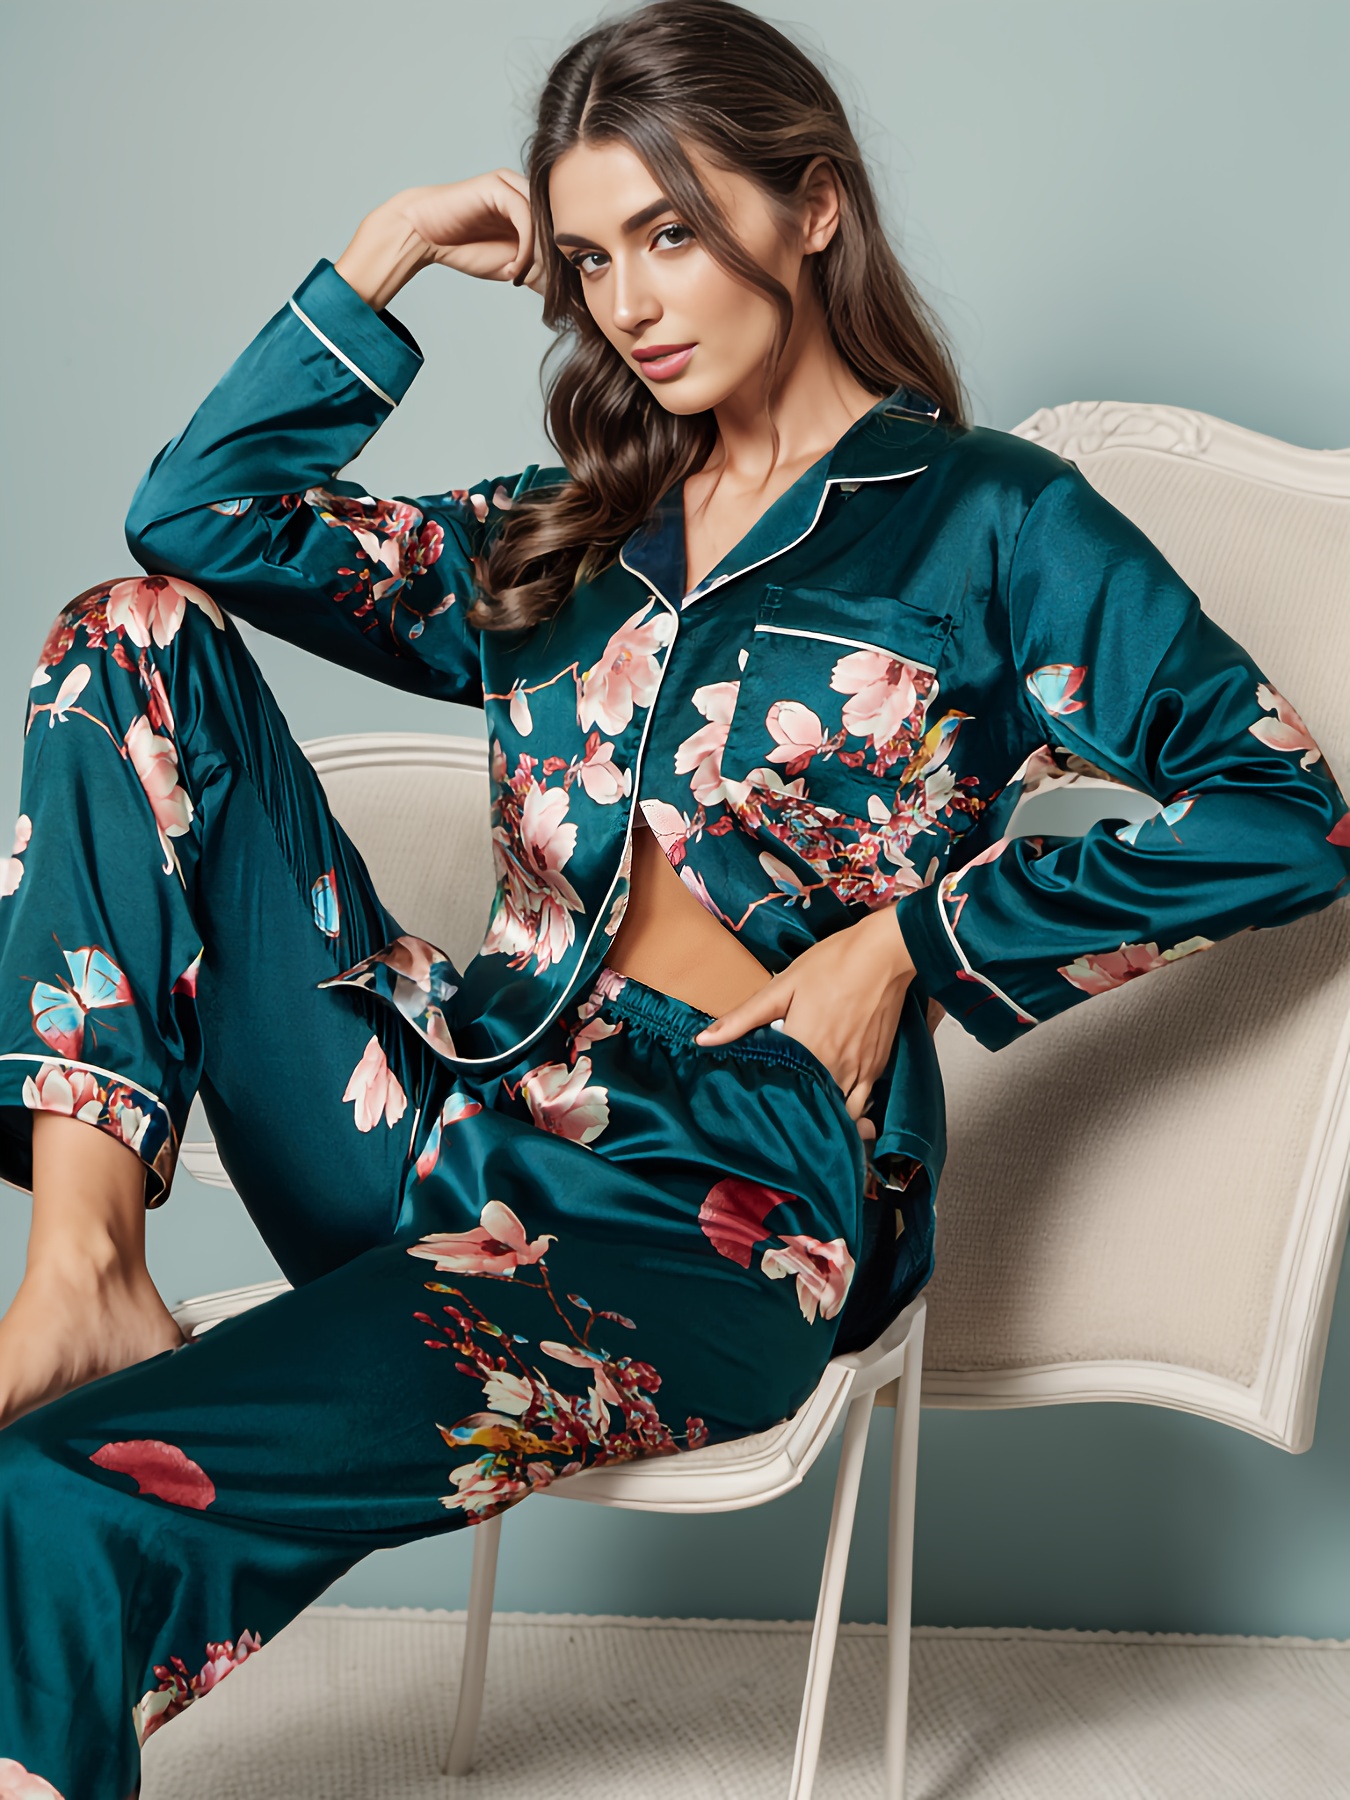 Women's 2 pieces Pajamas Sets Satin Silk Babydoll Lingerie Sleepwear  Nightwear Loungewear Summer Pj